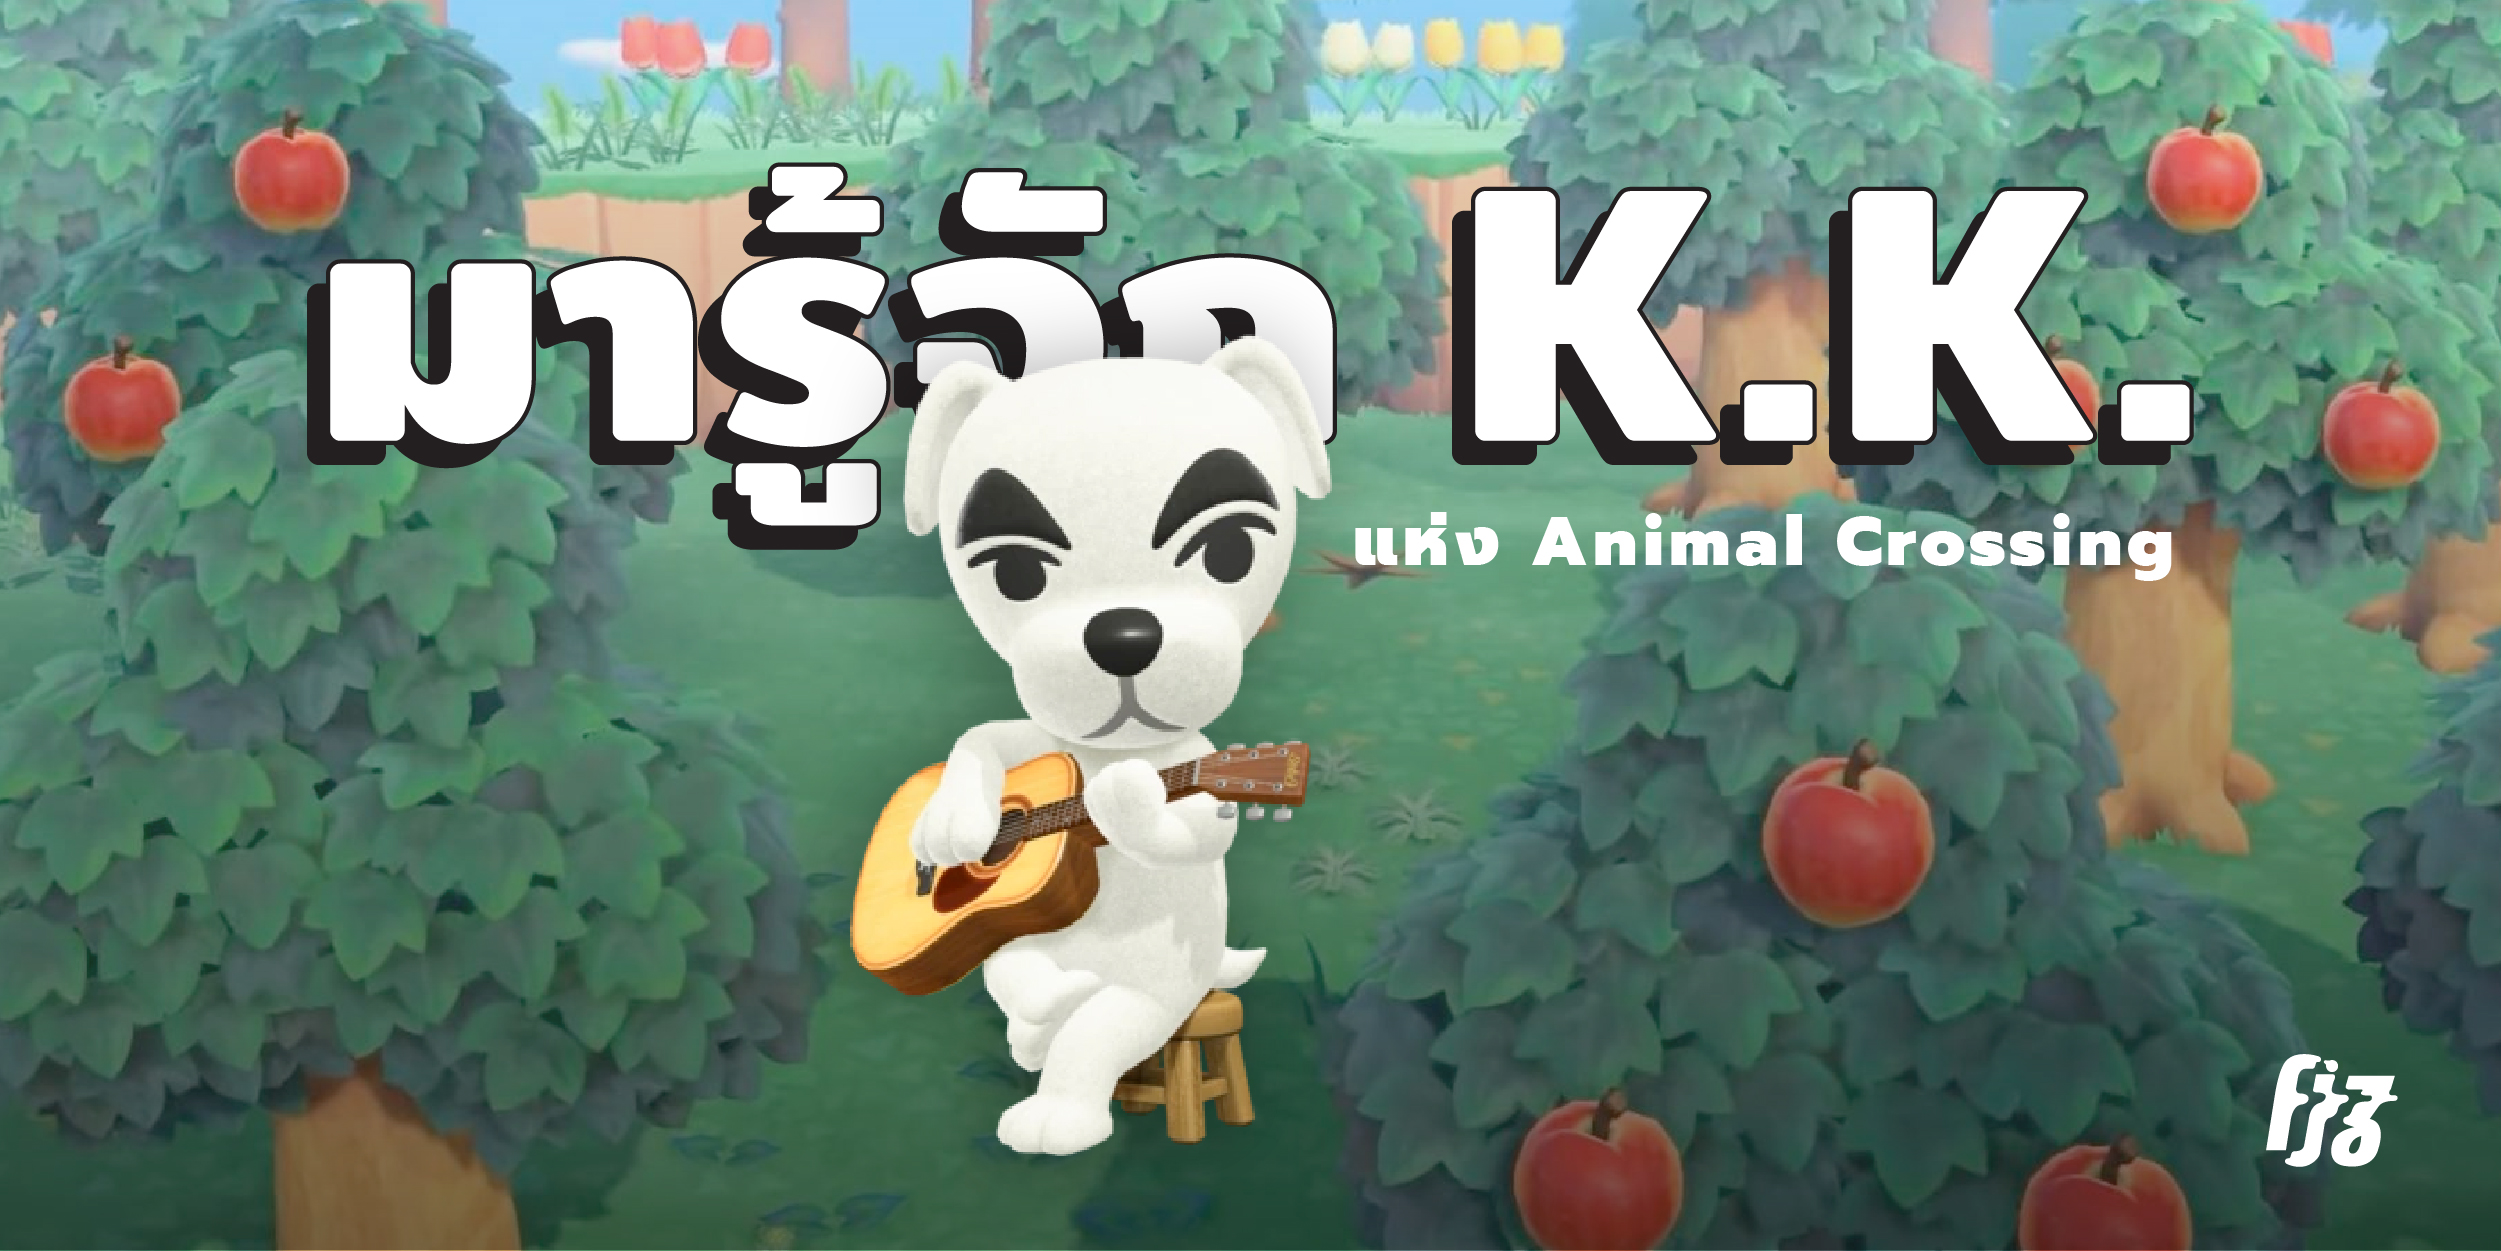 รู้จักกับ K.K. ศิลปินชื่อดังในโลก Animal Crossing ที่ทุกคนกำลังติดงอมแงม